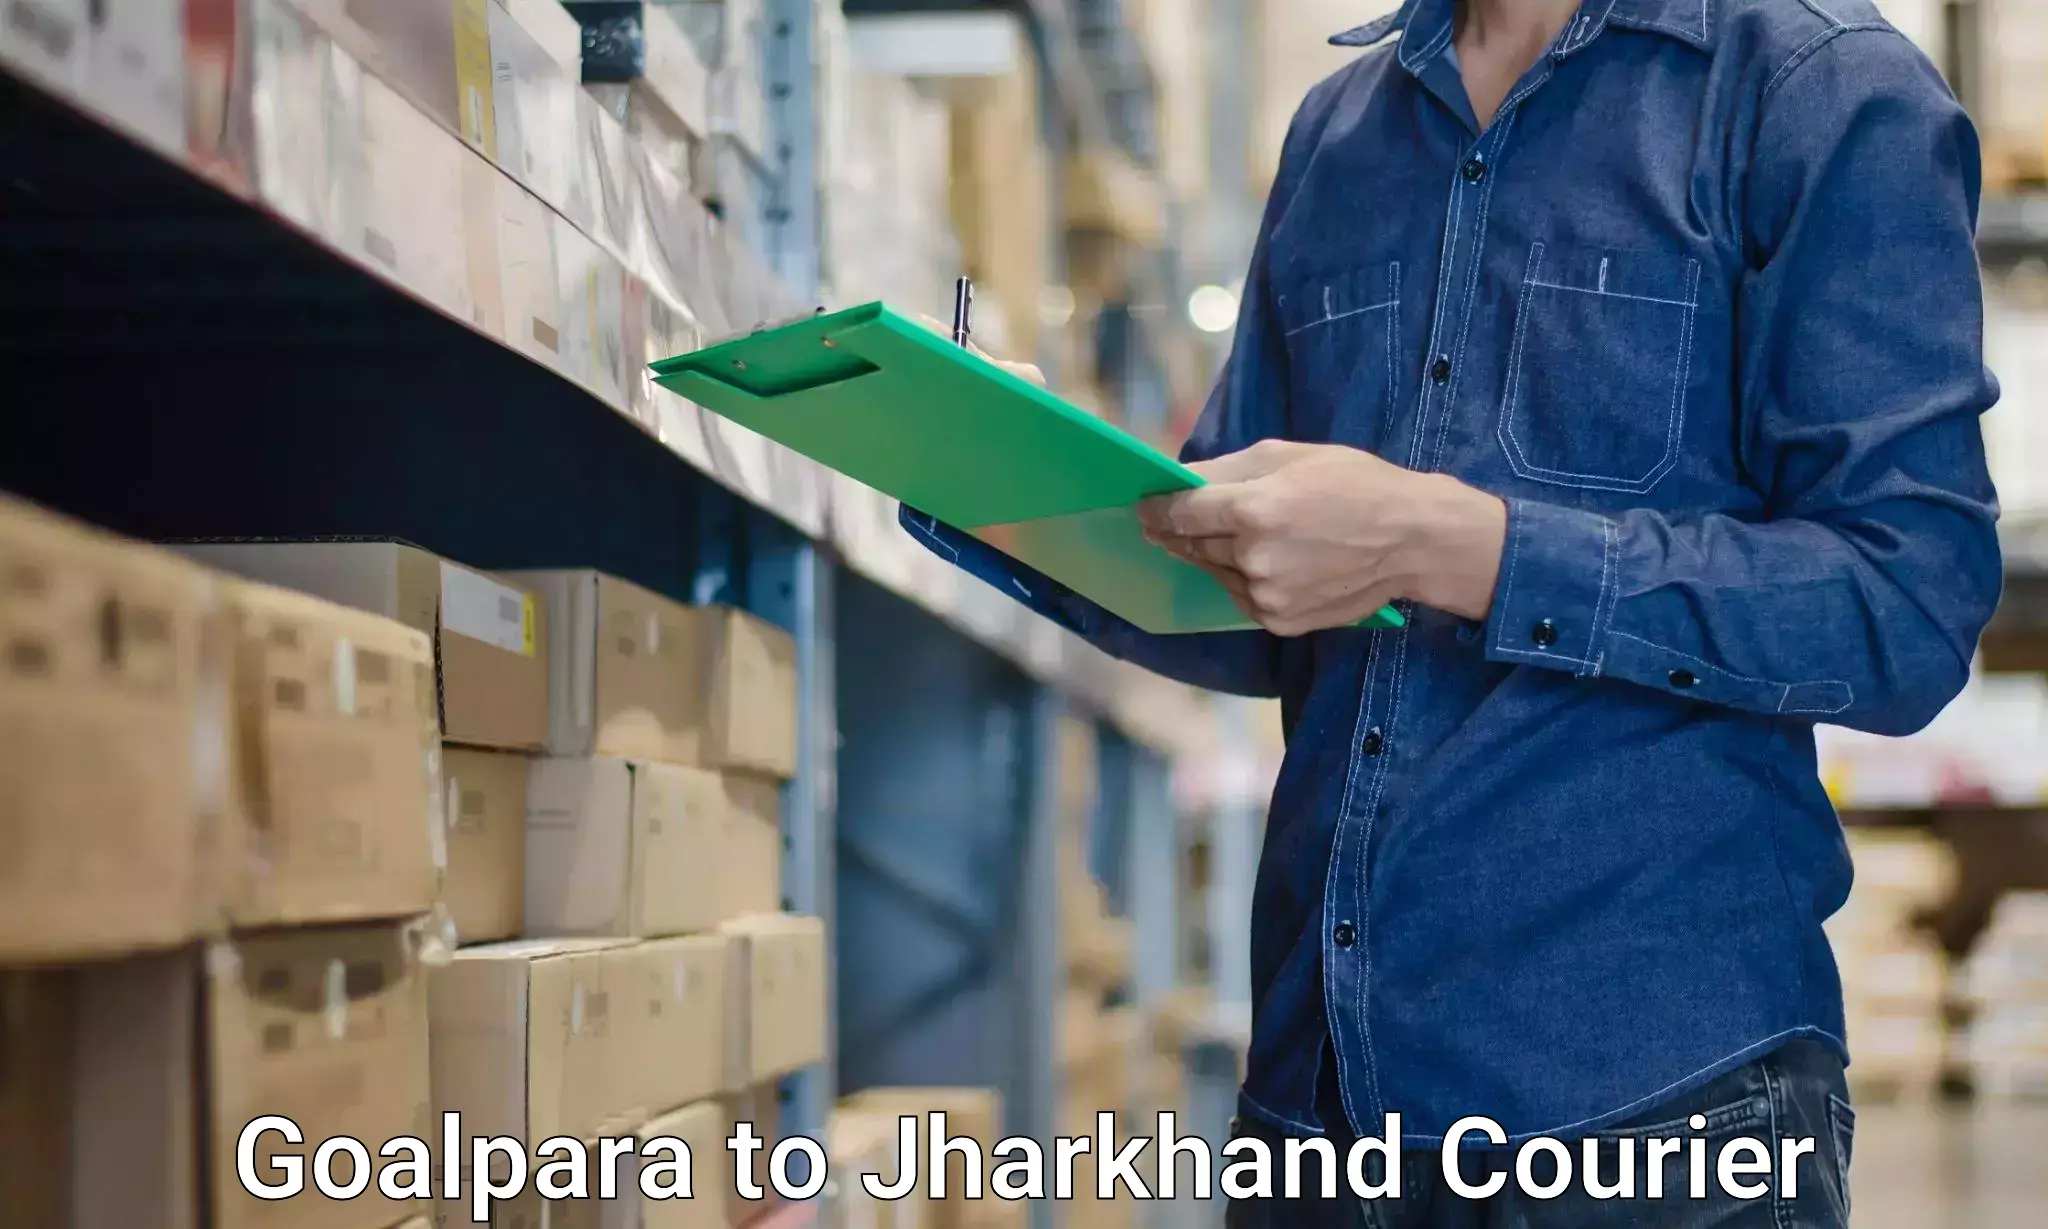 Furniture transport experts Goalpara to Rajdhanwar